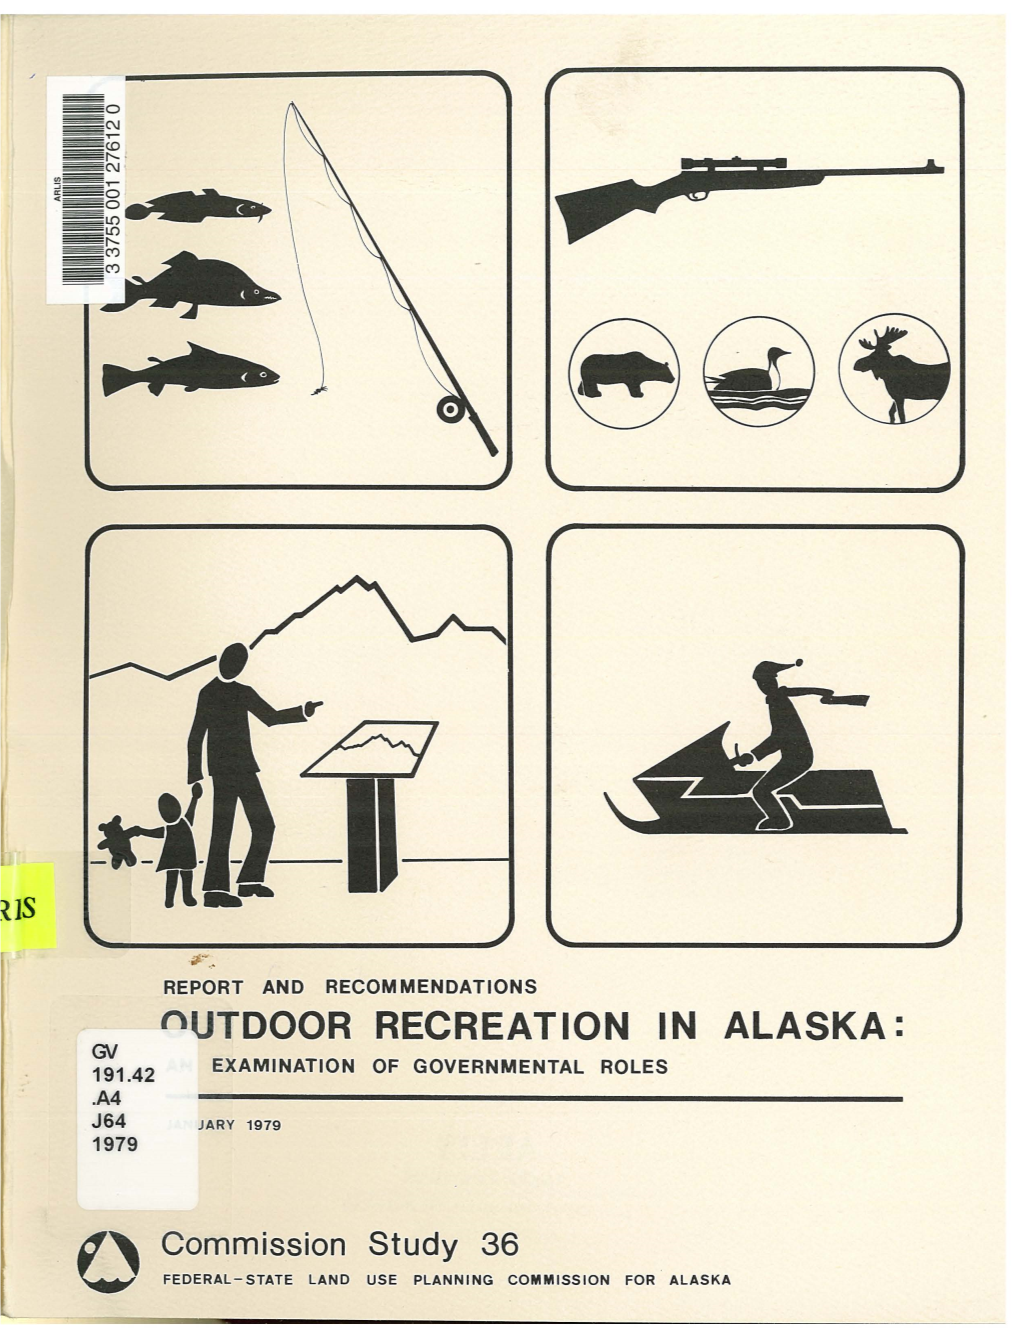 Nutdoor RECREATION in ALASKA: GJ 191.42 EXAMINATION of GOVERNMENTAL ROLES .A4 J64 JARY 1979 1979